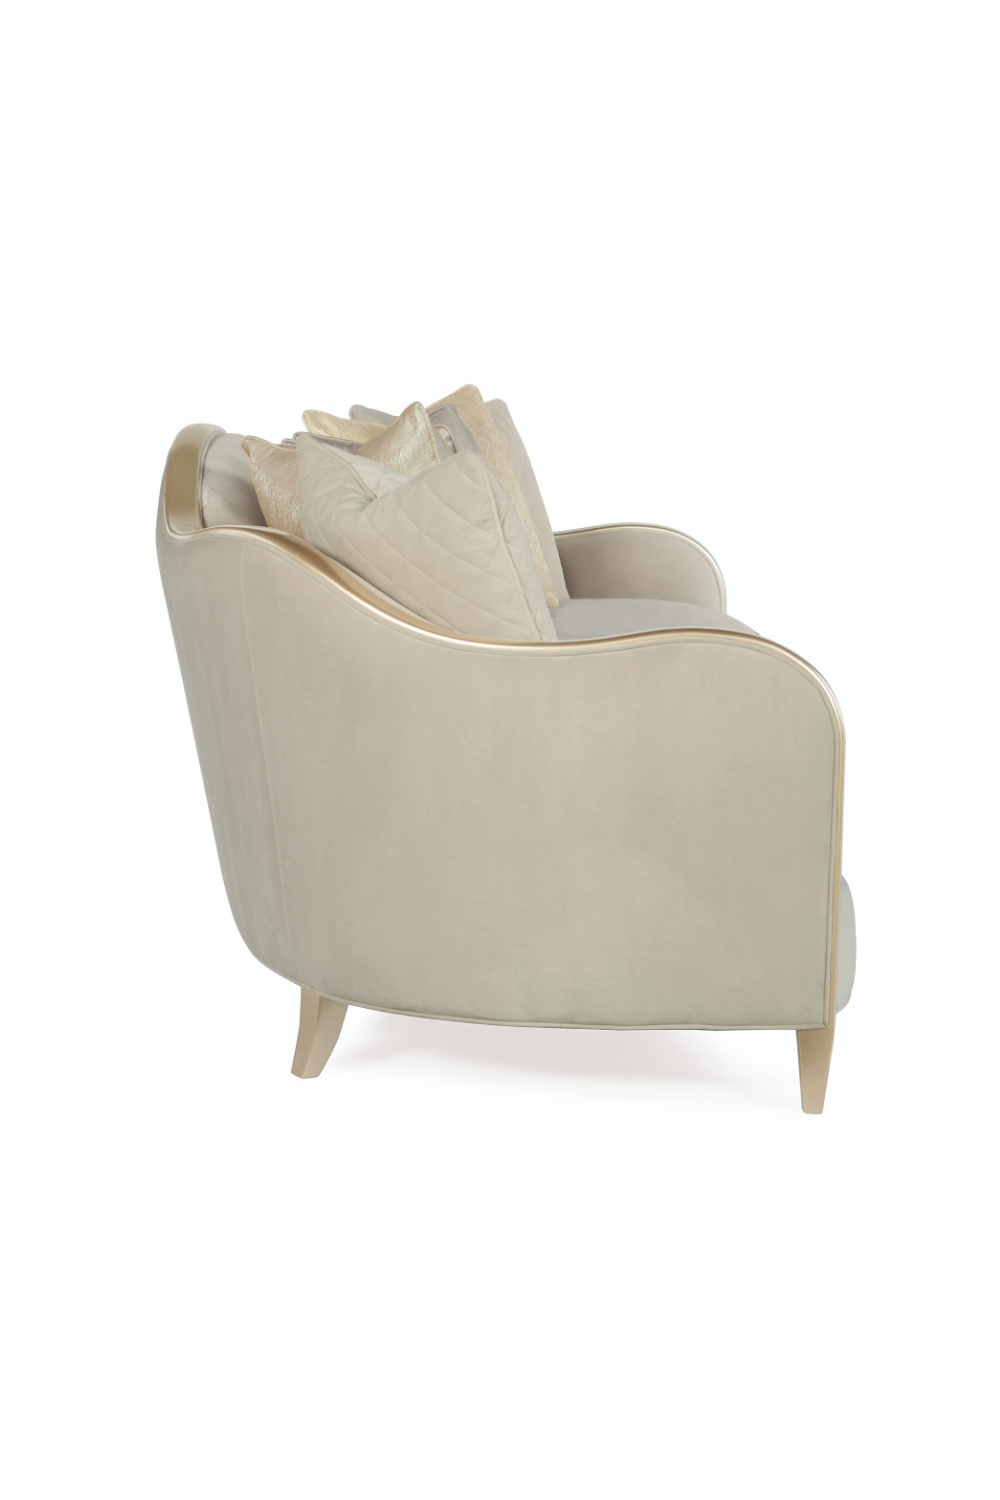 Beige Modern Classic Sofa | Caracole Adela | Oroa.com